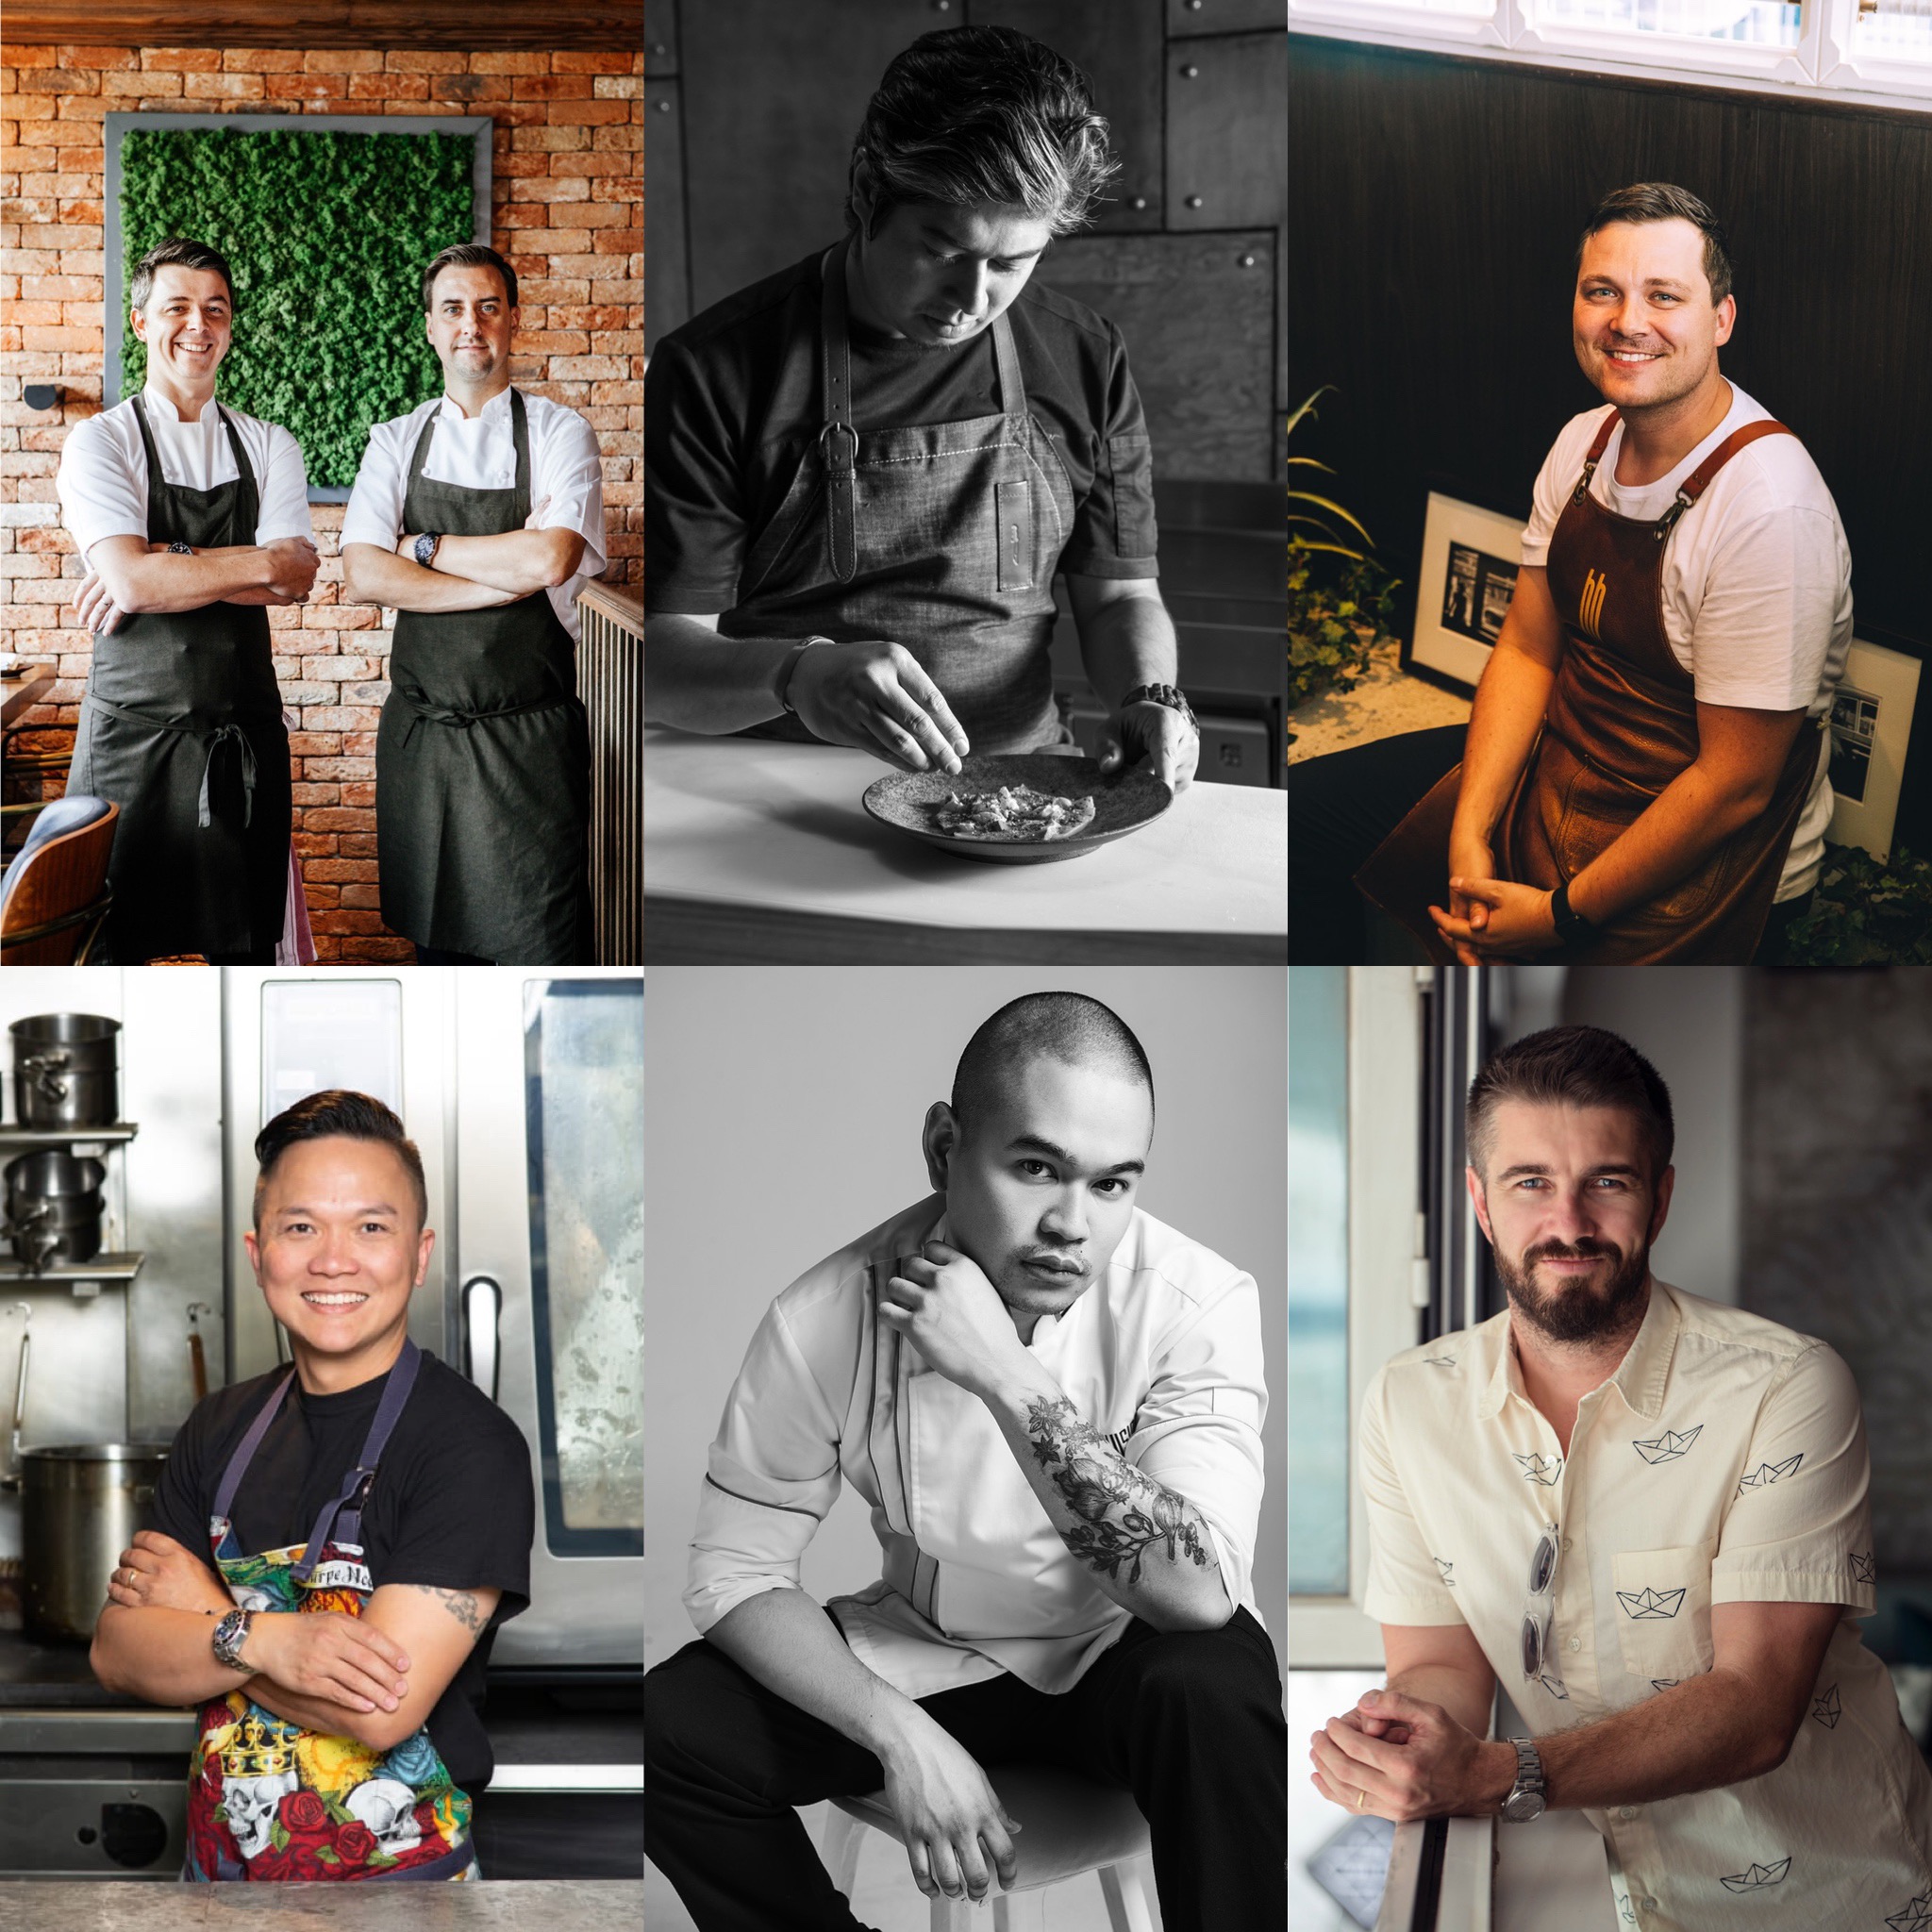 Dubai chefpreneurs - Dubai chefs - FooDiva